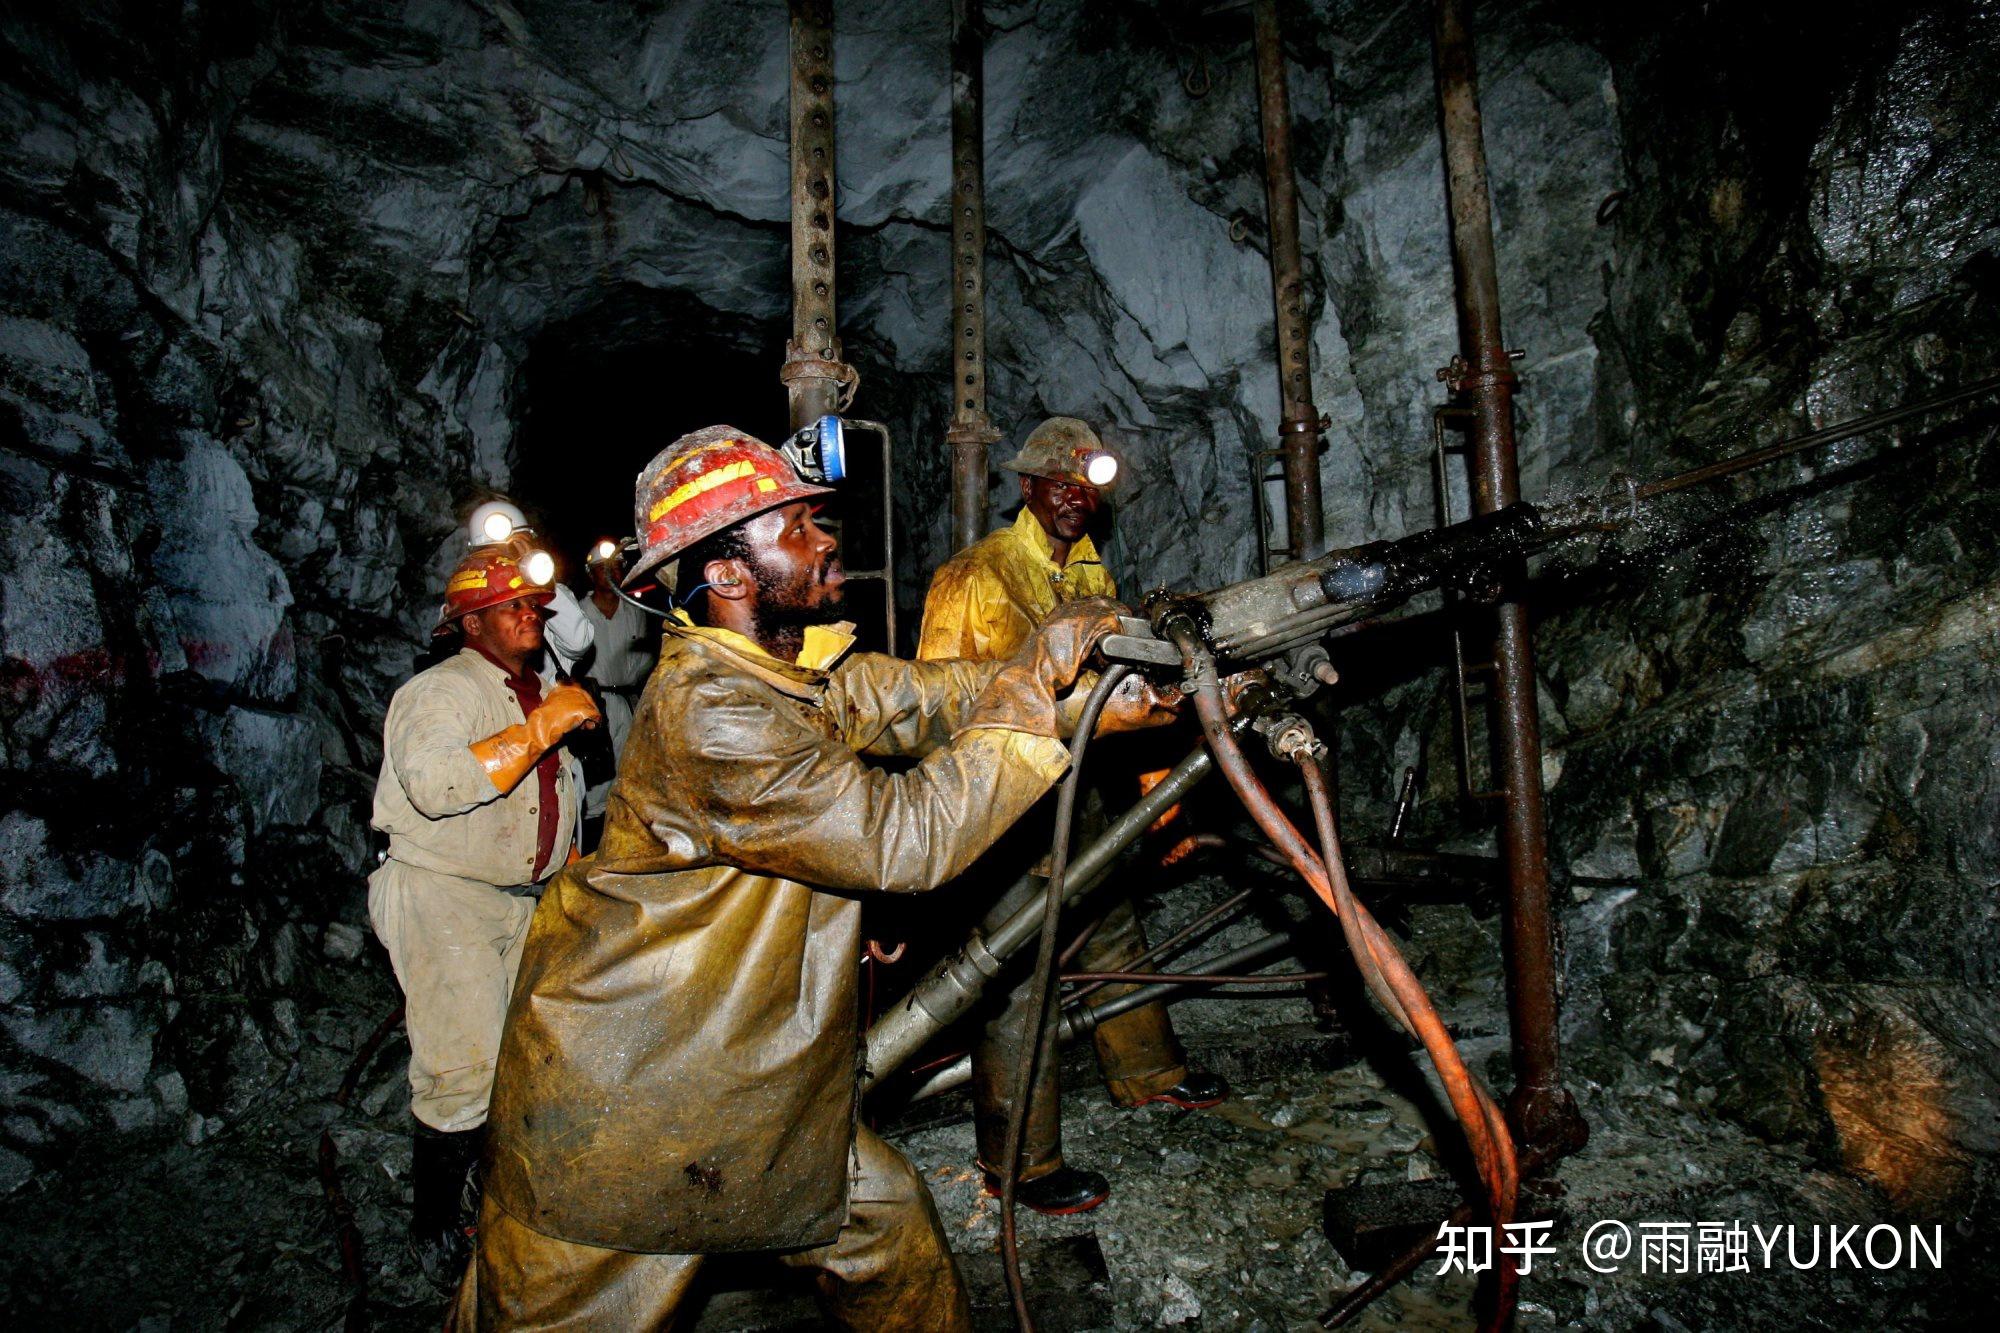 全球最深矿洞4000米深专门挖金矿从地表到底来回一趟近3小时